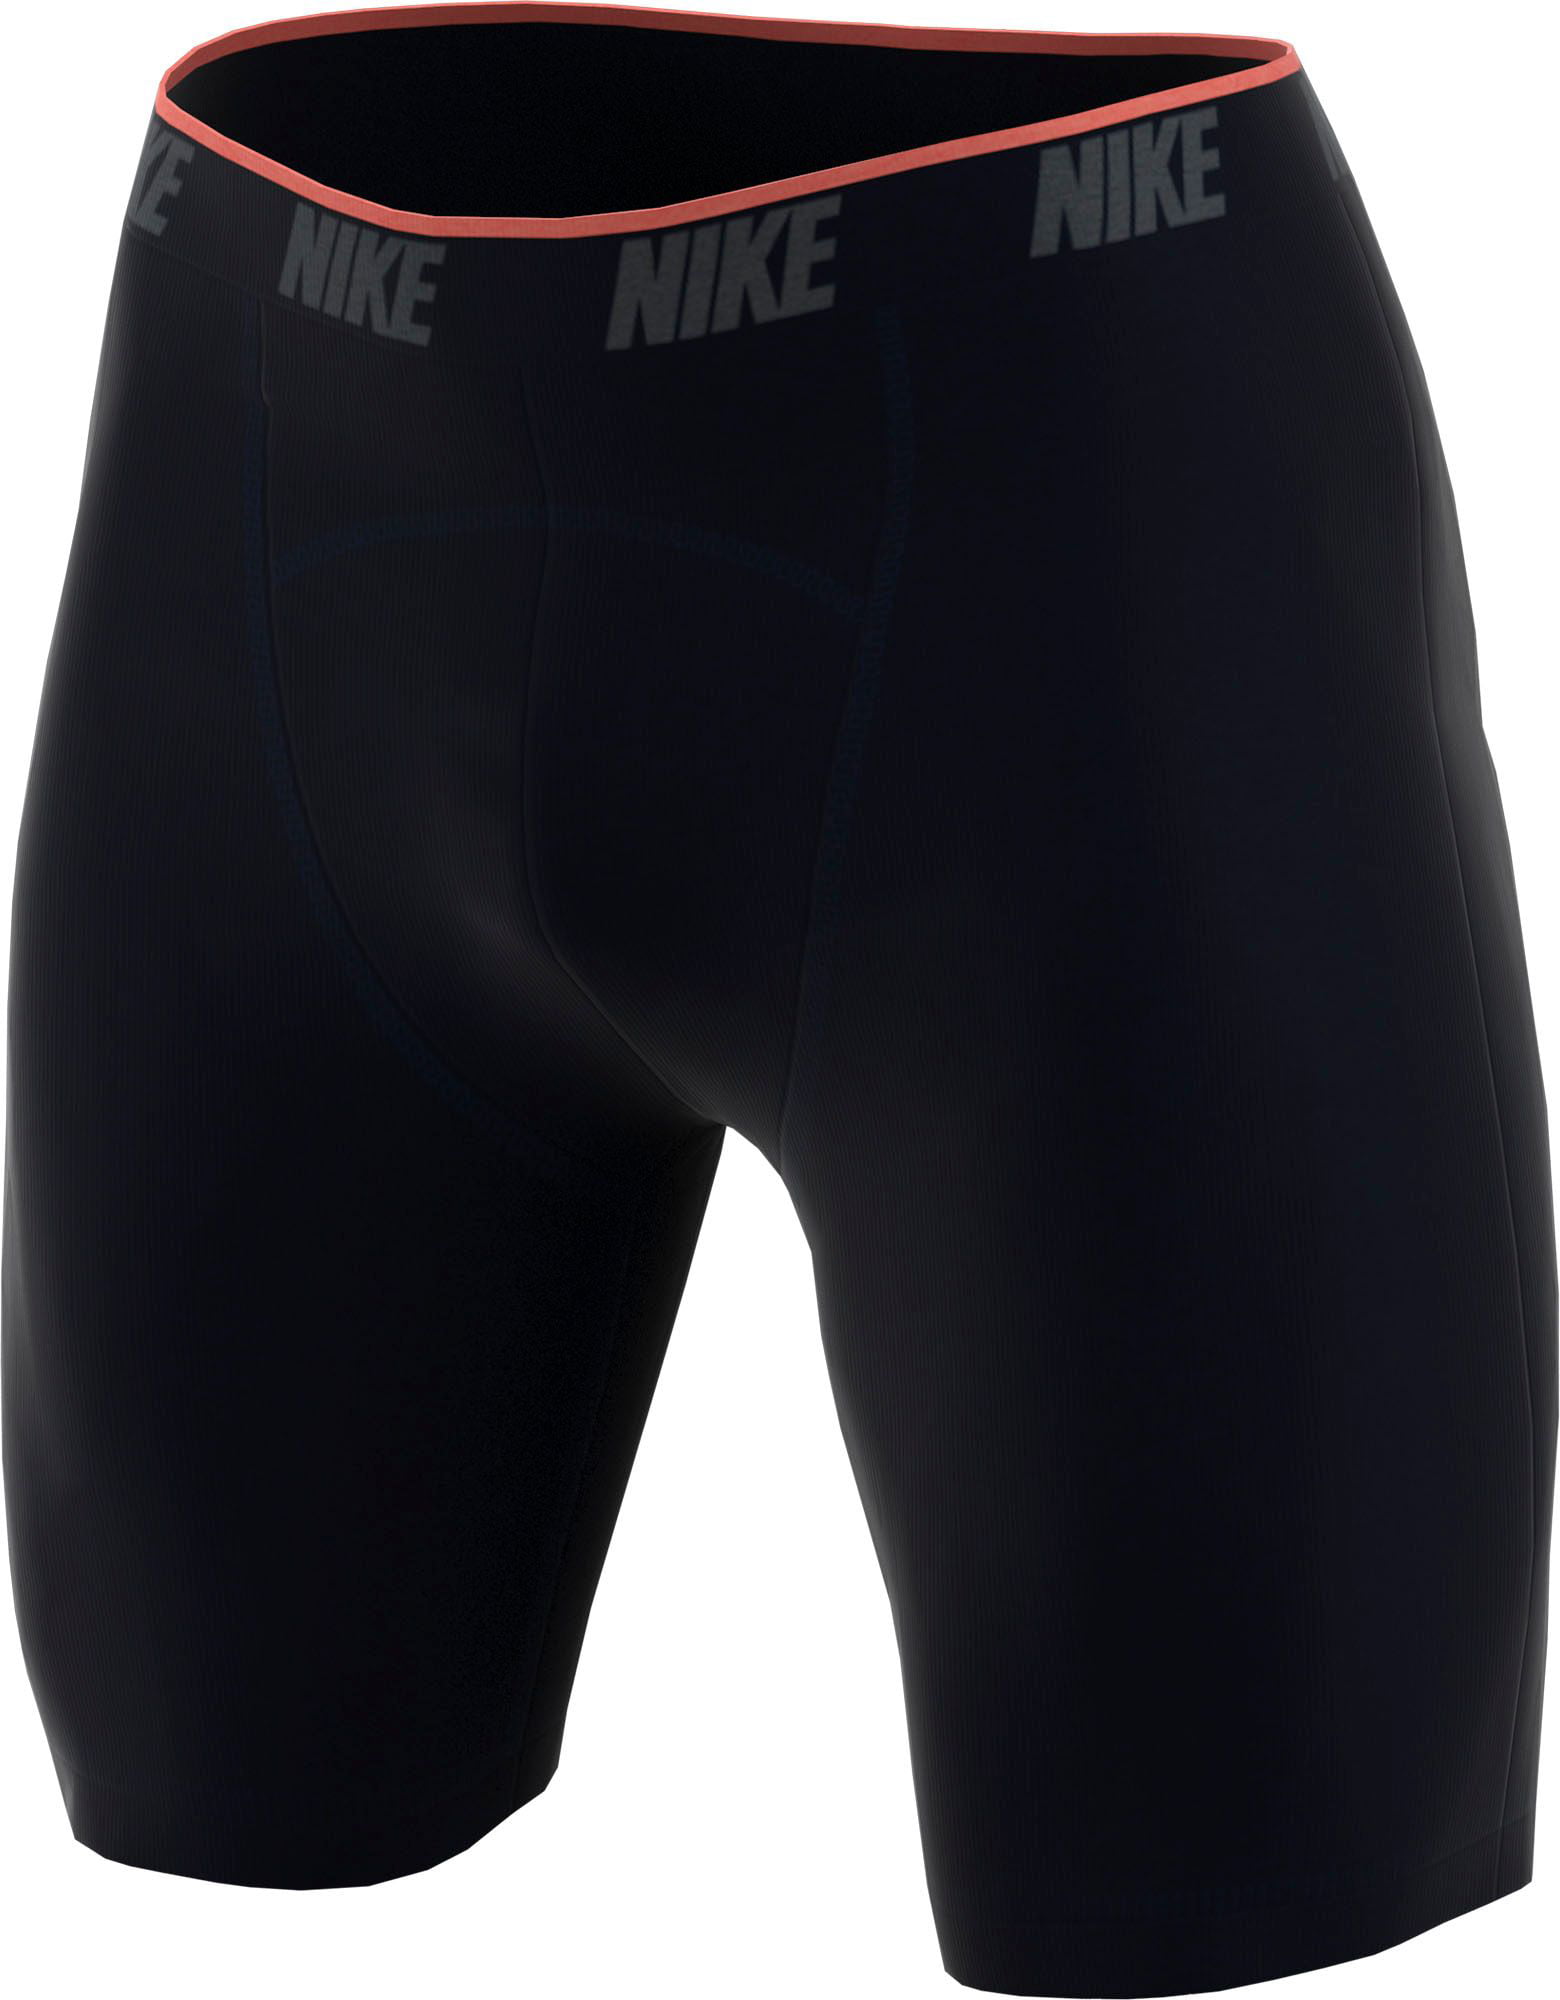 Alvast Afspraak ergens bij betrokken zijn Nike Men's Long Boxer Briefs ? 2 Pack - Walmart.com